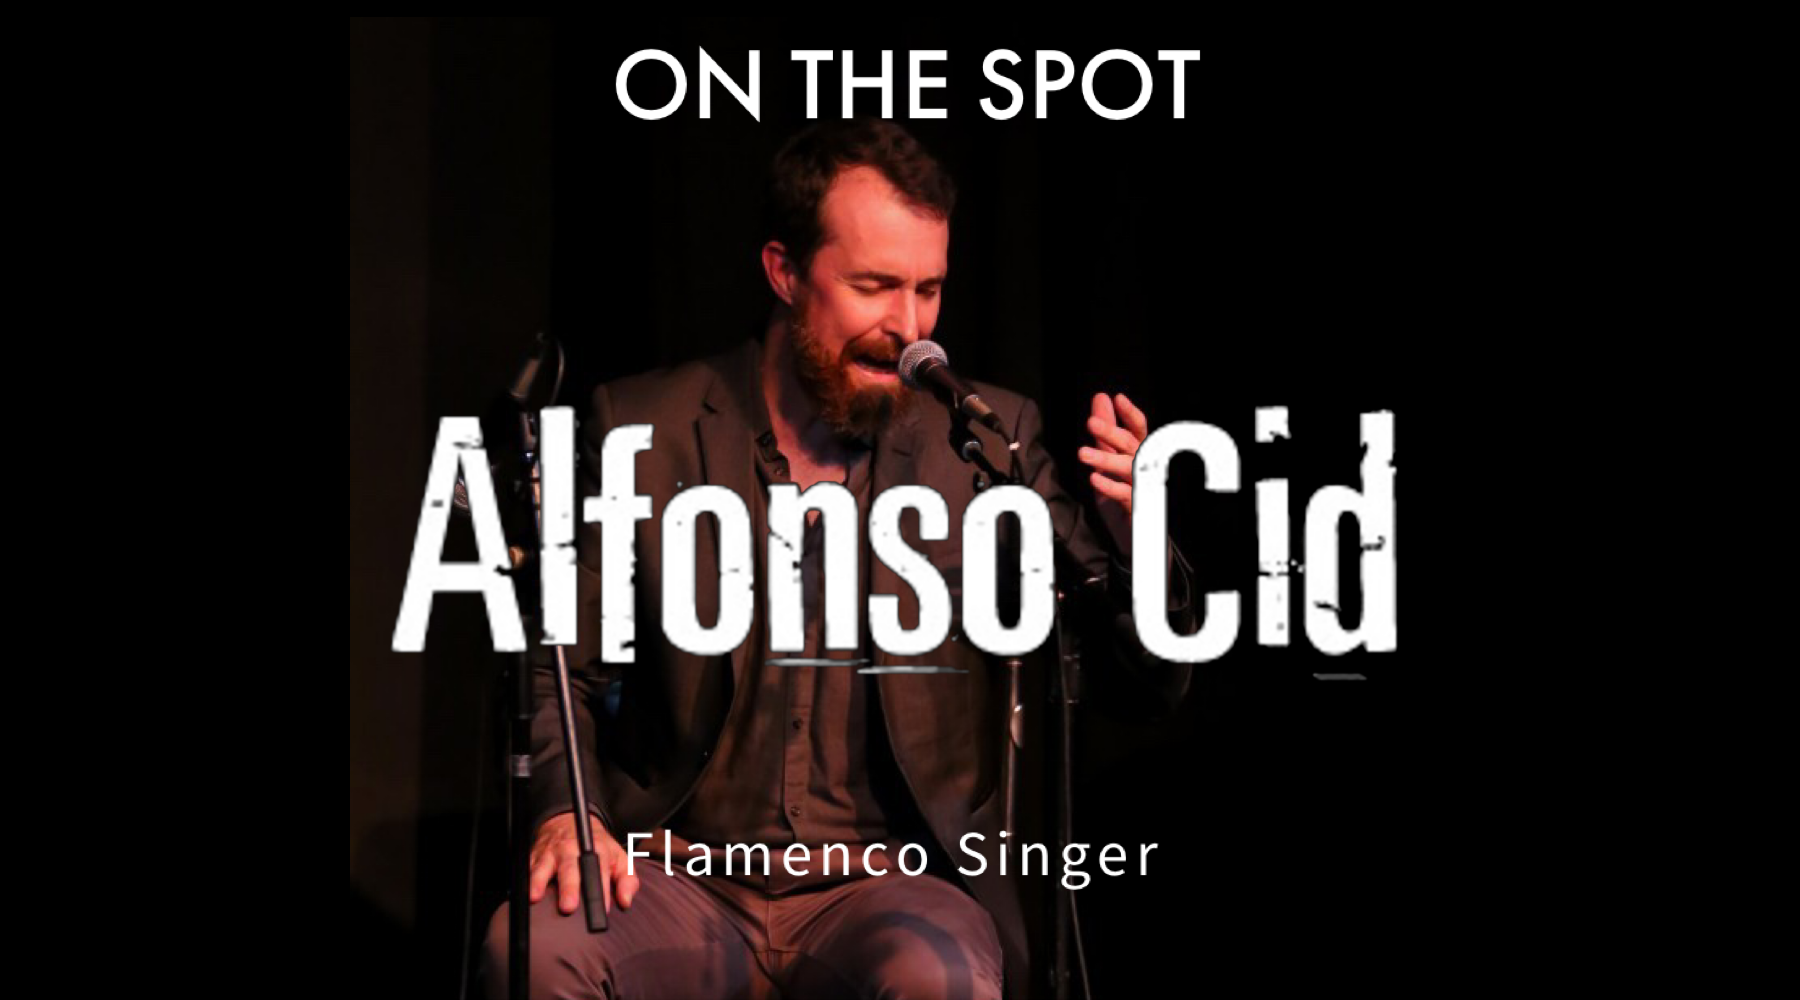 Alfonso cid Flamenco Snger